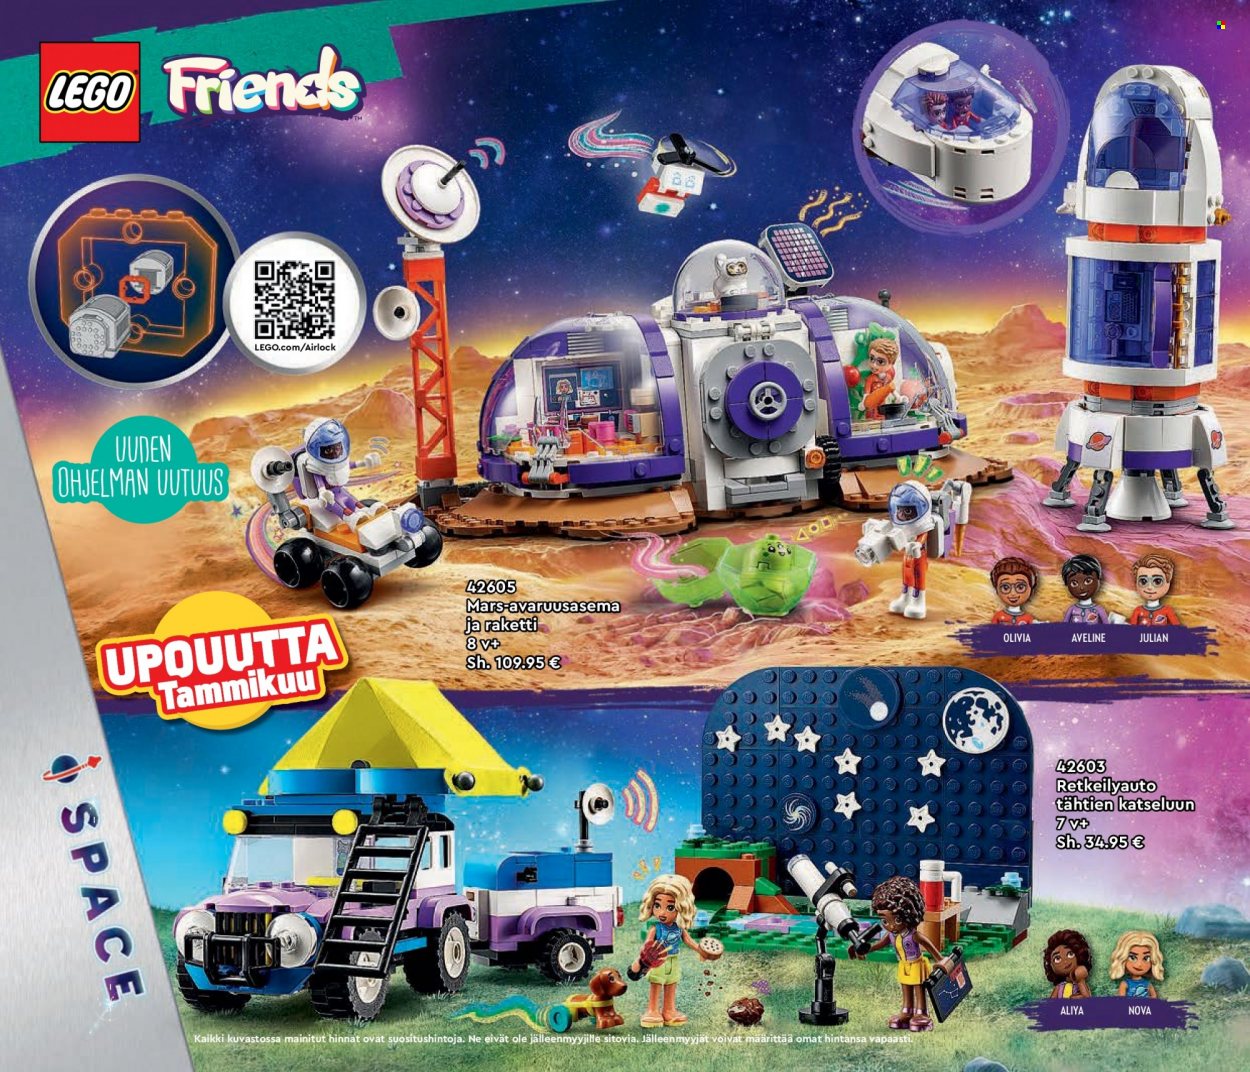 Tokmanni tarjoukset  - Tarjoustuotteet - LEGO, LEGO Friends, raketti. Sivu 38.